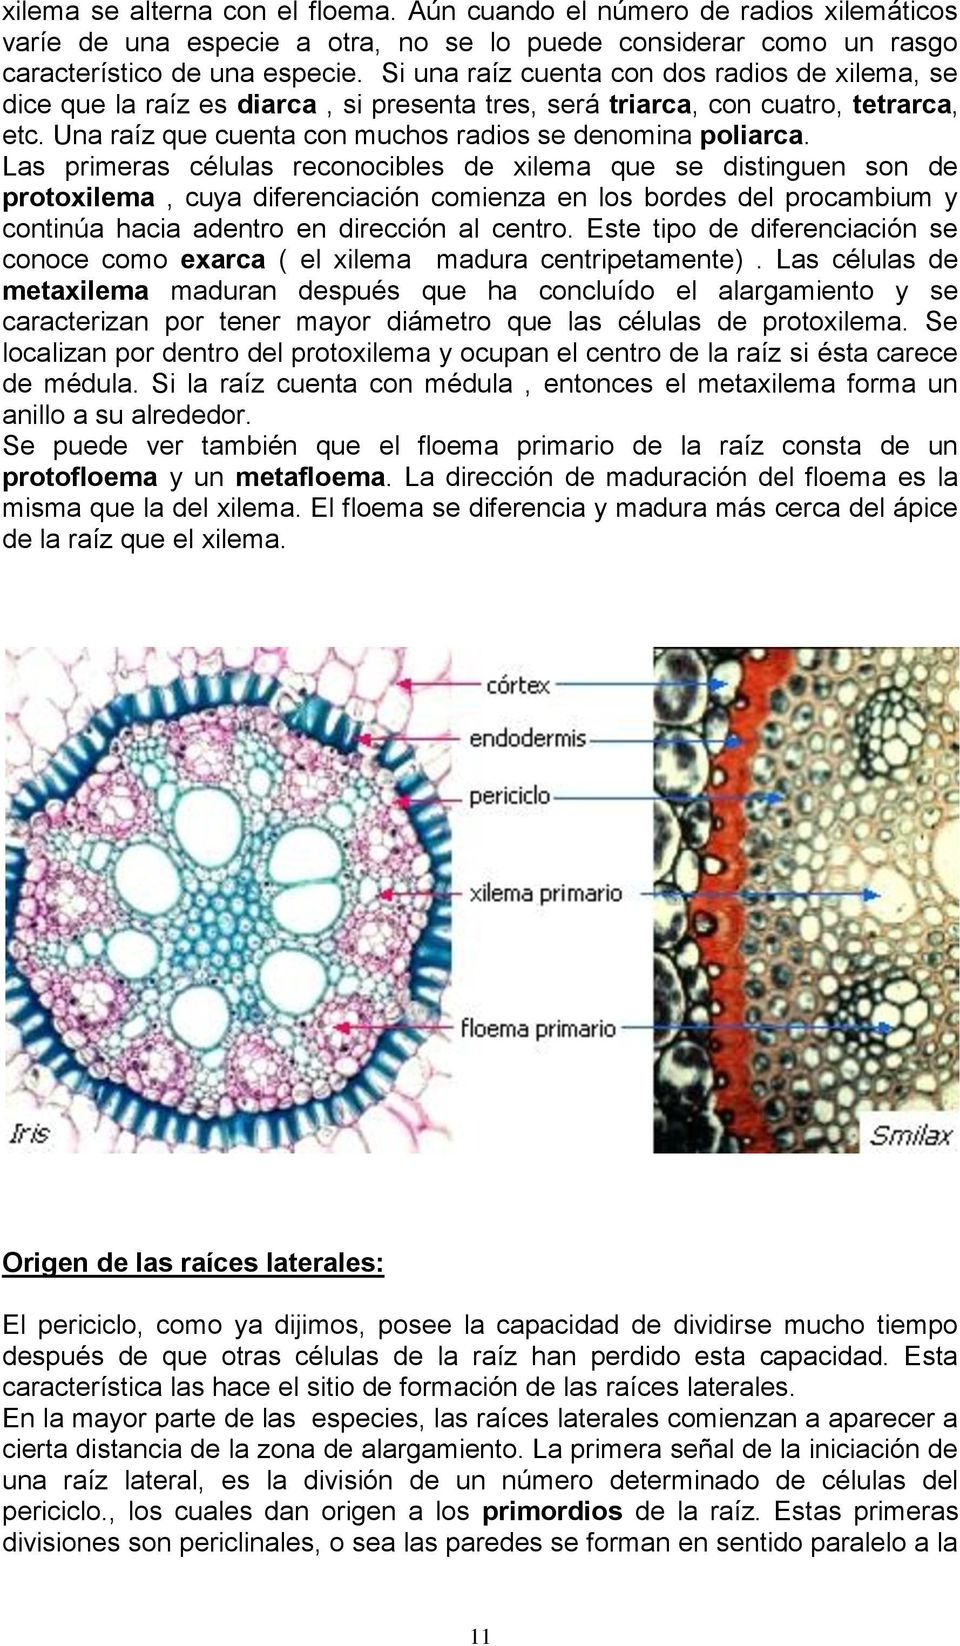 Las primeras células reconocibles de xilema que se distinguen son de protoxilema, cuya diferenciación comienza en los bordes del procambium y continúa hacia adentro en dirección al centro.